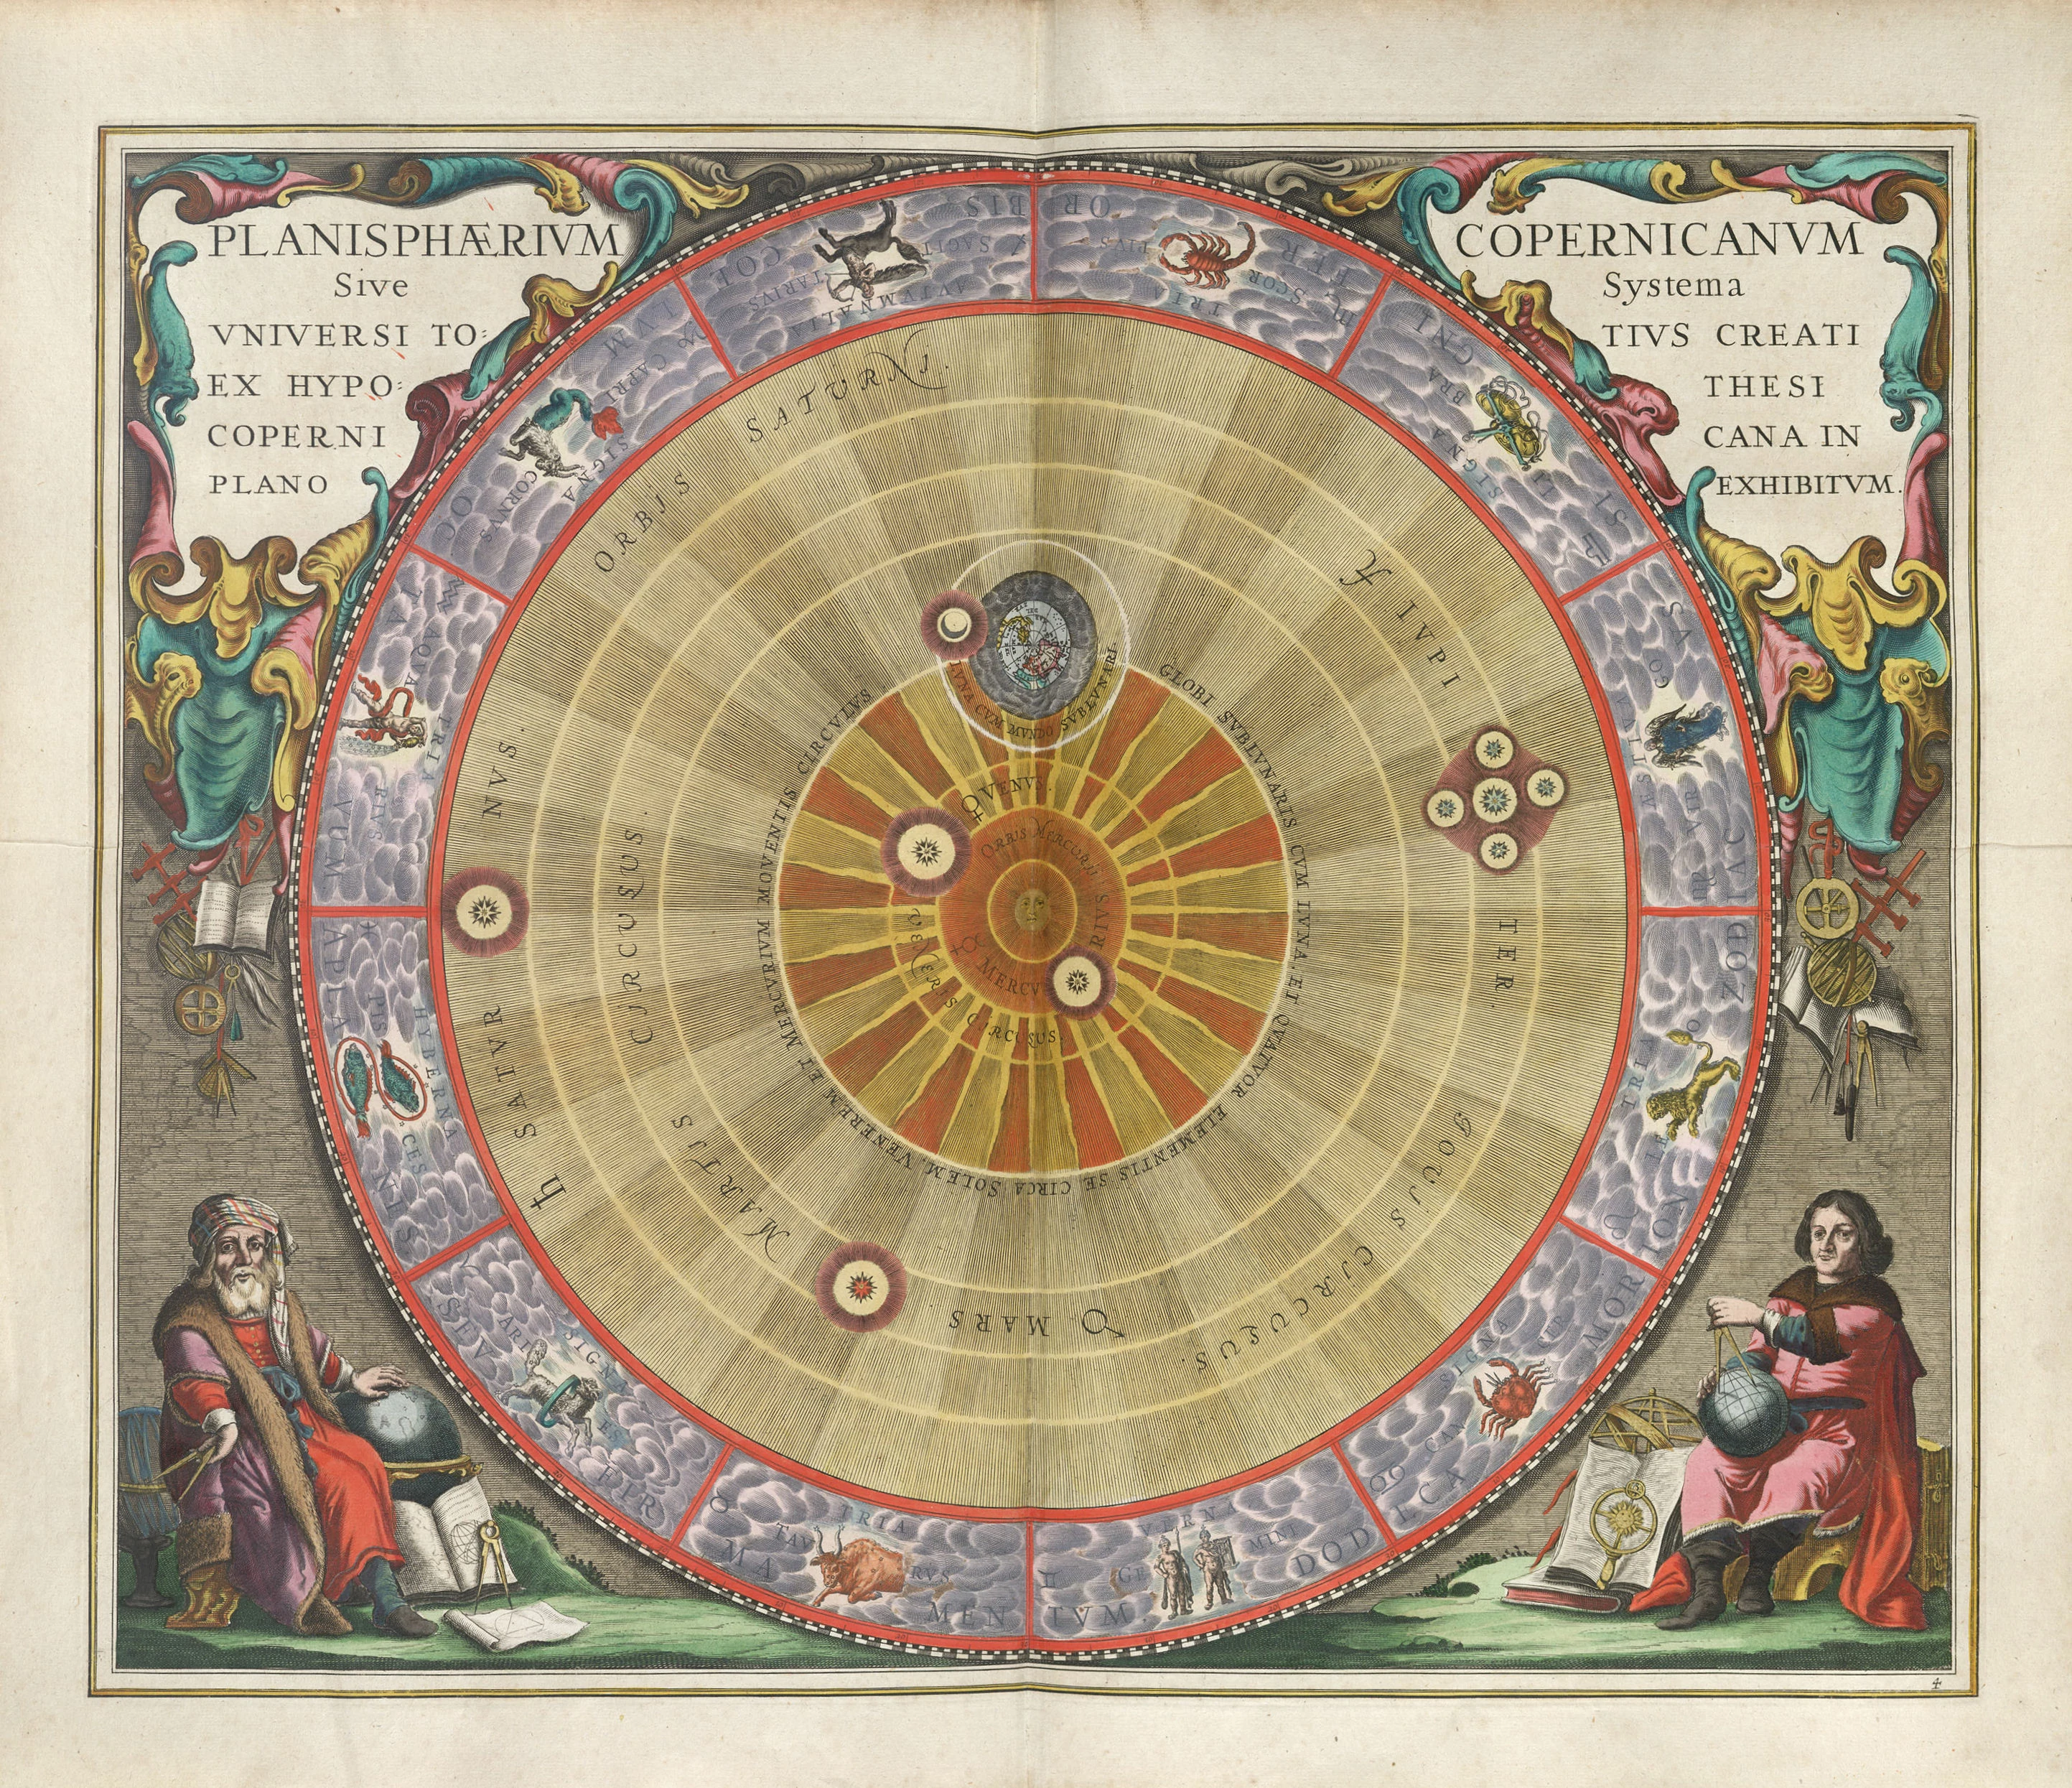 The Copernicus Planisphere, Andreas Cellarius